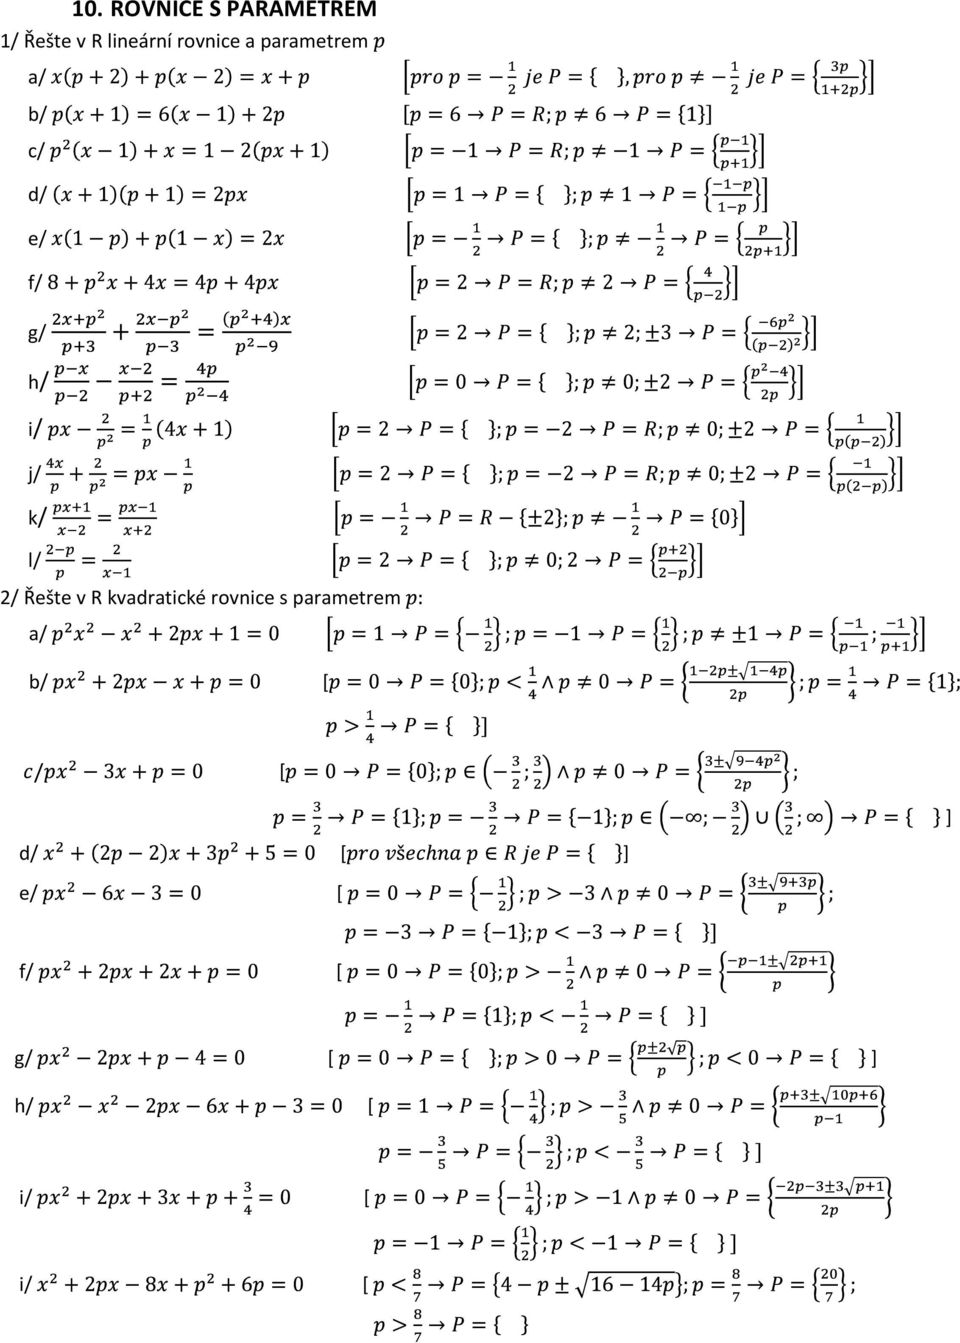 j/ k/ l/ 2/ Řešte v R kvadratické rovnice s